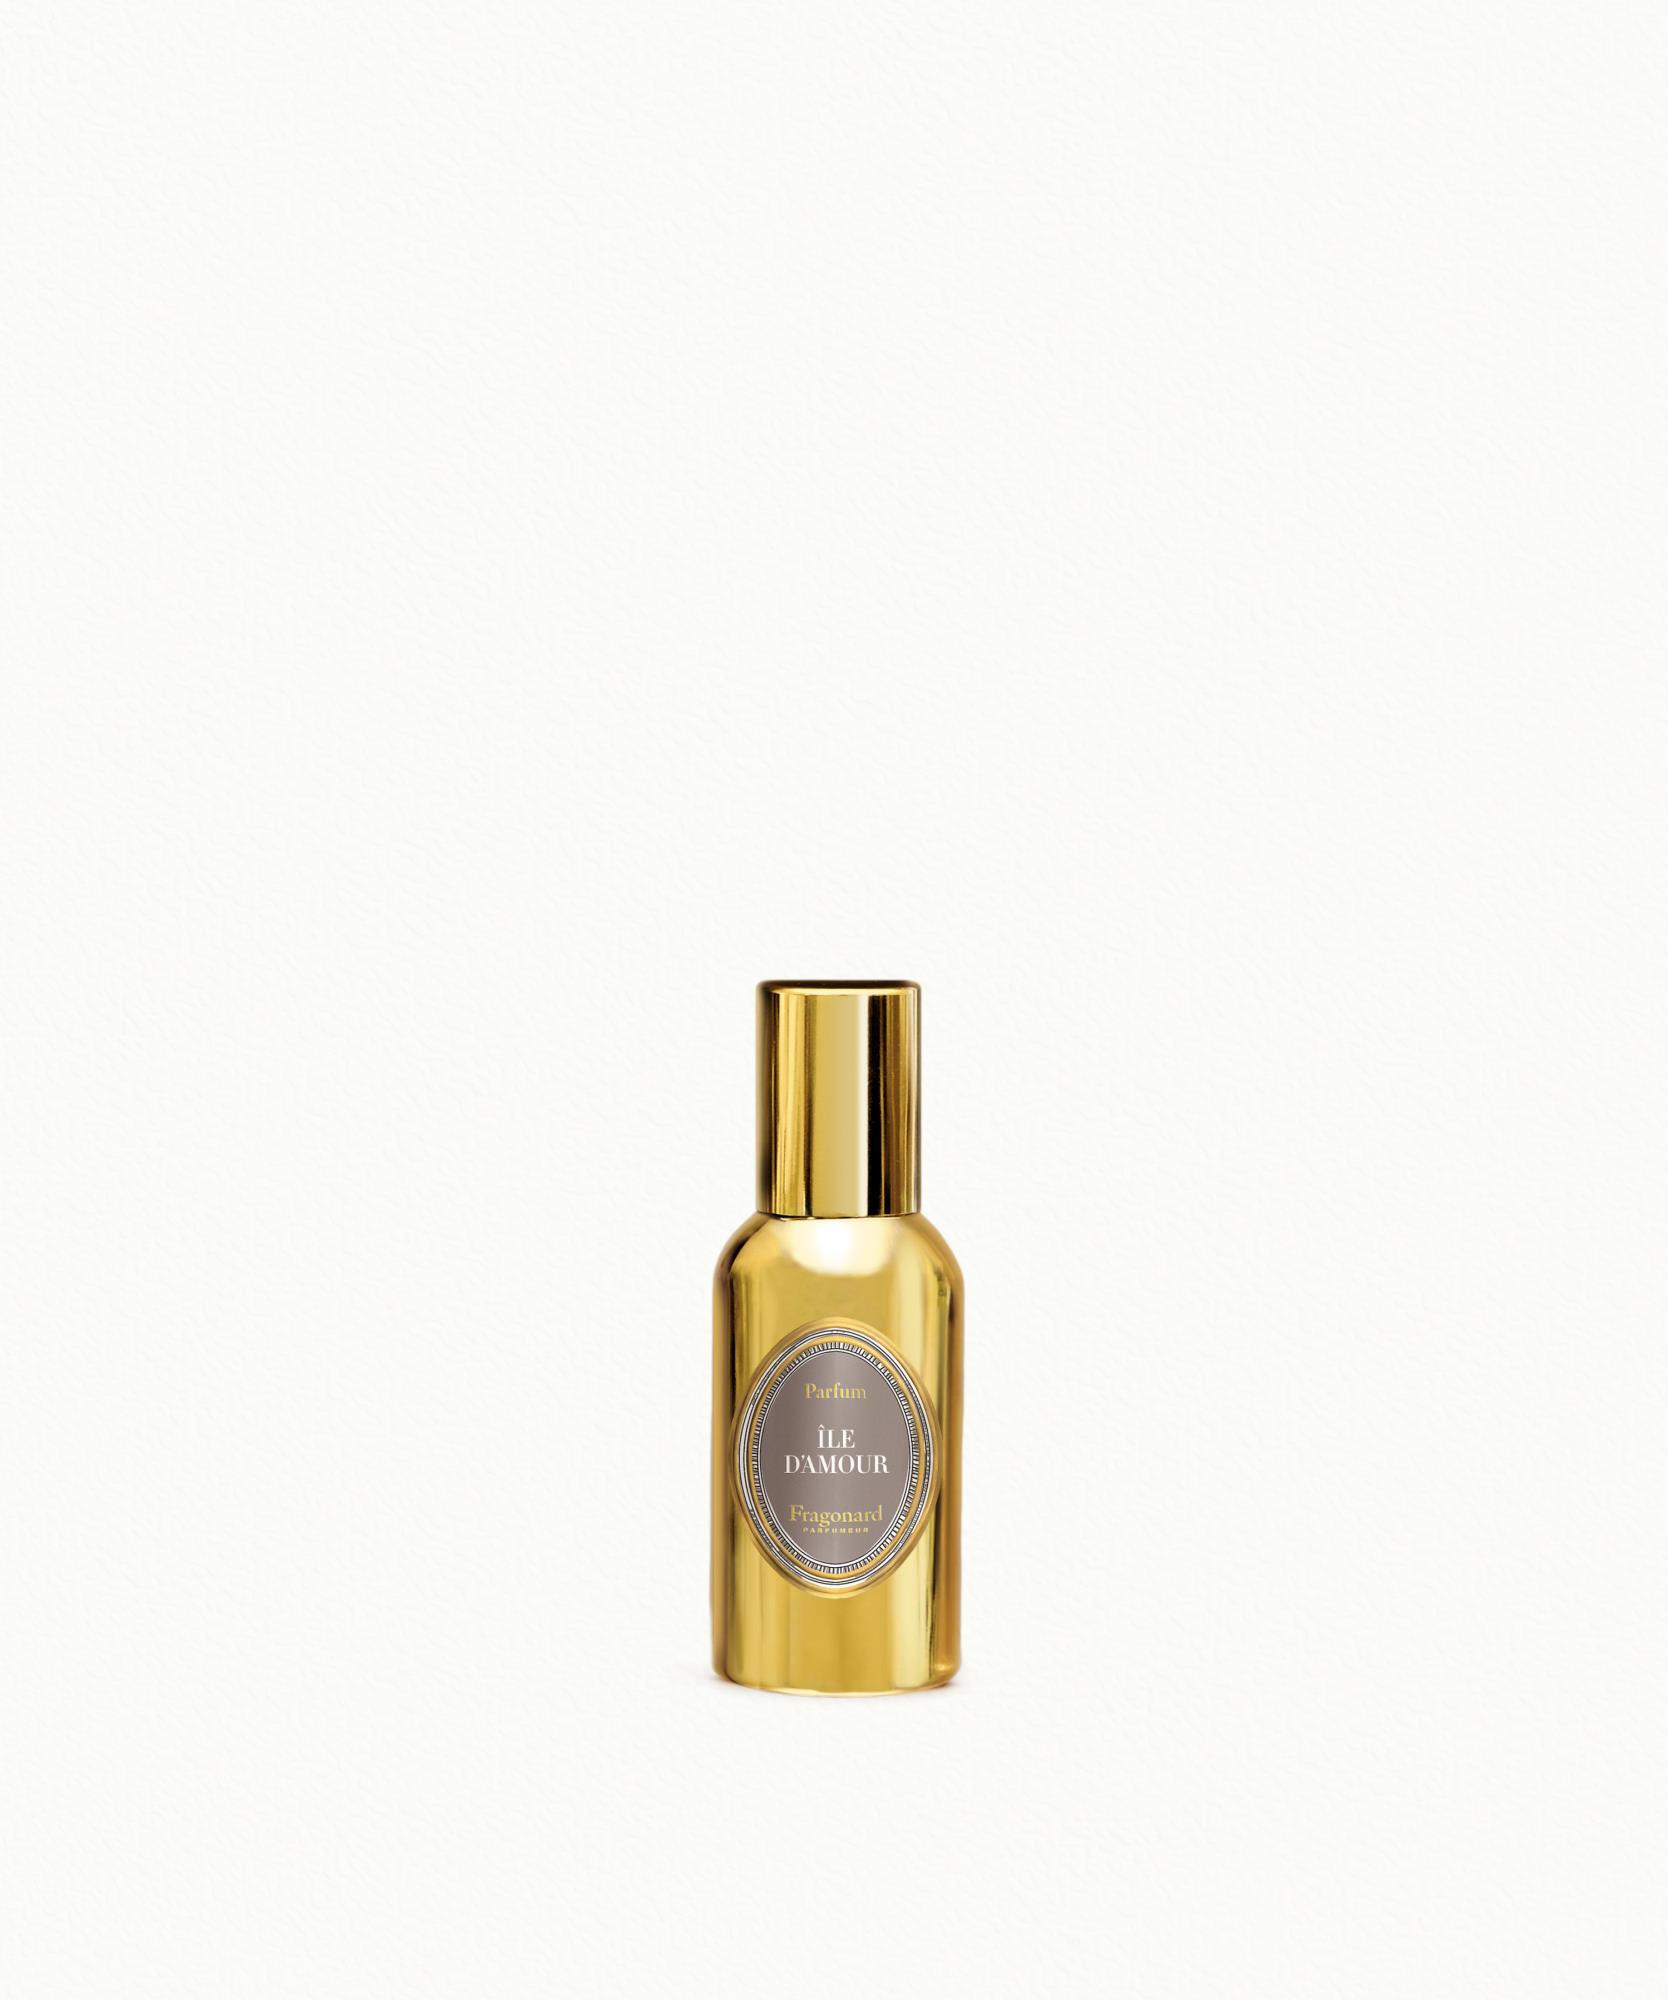 Ile d'Amour Perfume 30ml Fragonard - $ 77.00